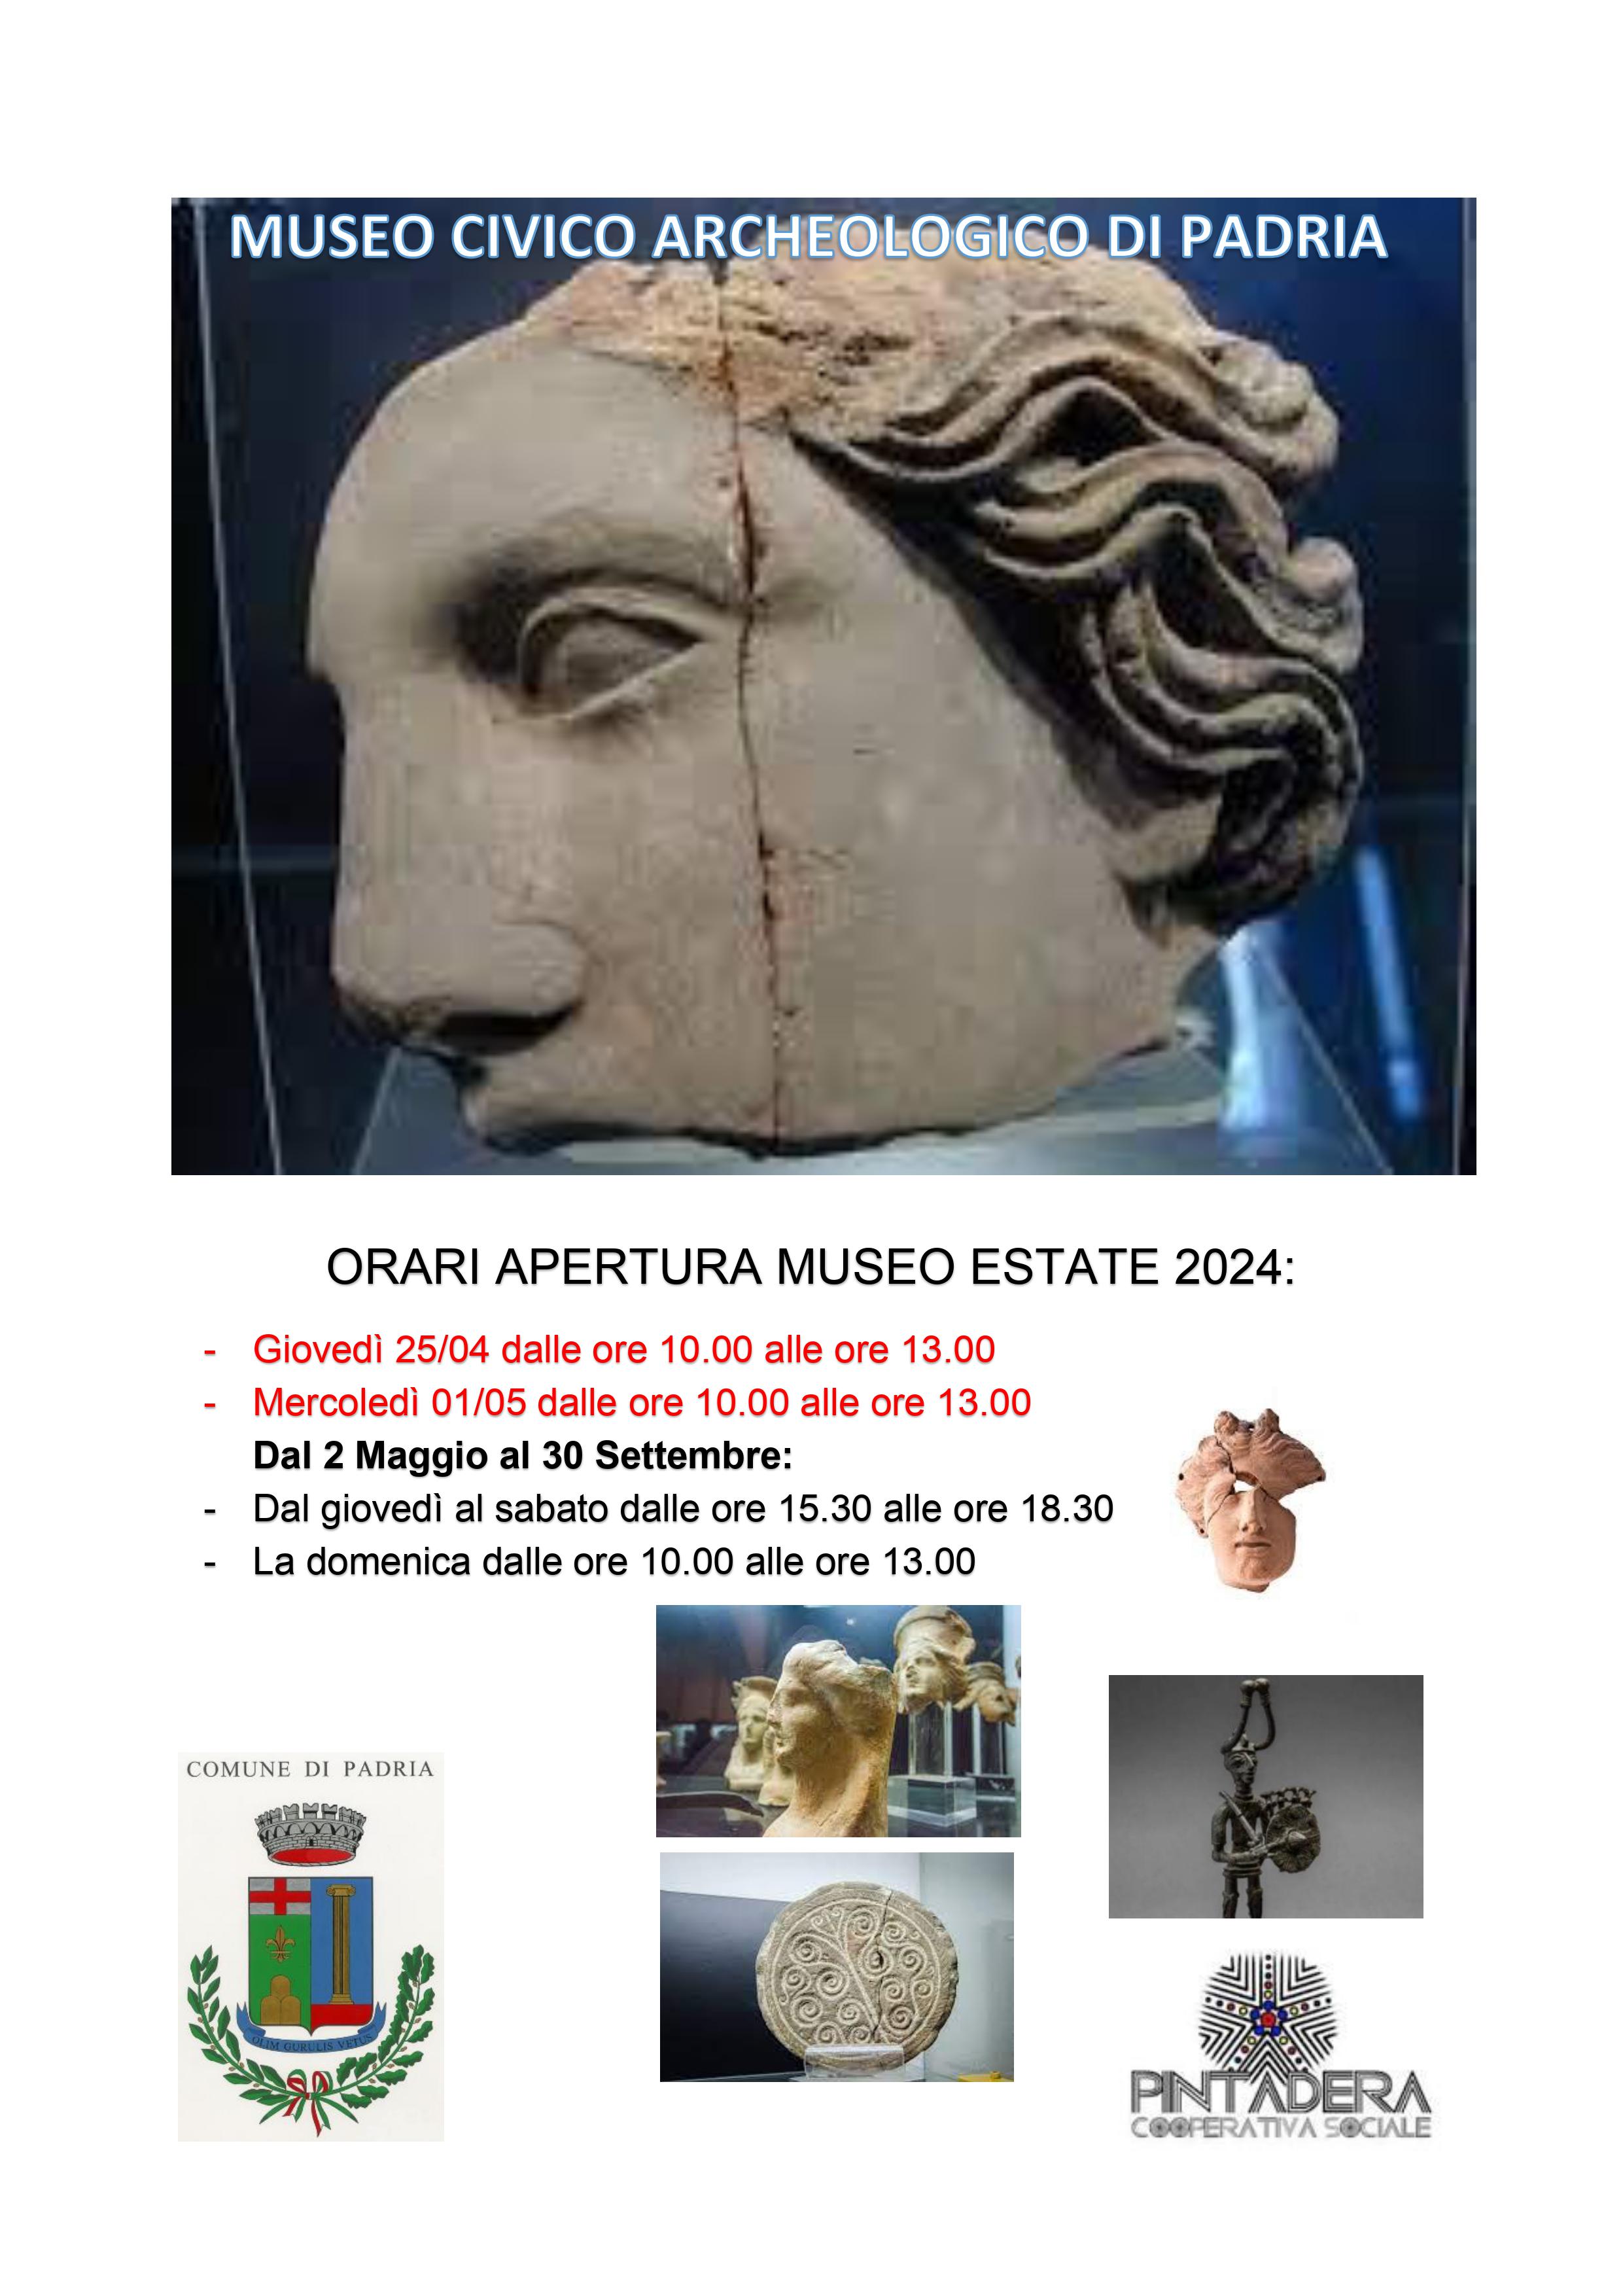 /.galleries/img-notizie/MUSEO-CIVICO-ARCHEOLOGICO-DI-PADRIA-orari-maggio-settembre-2024.jpg